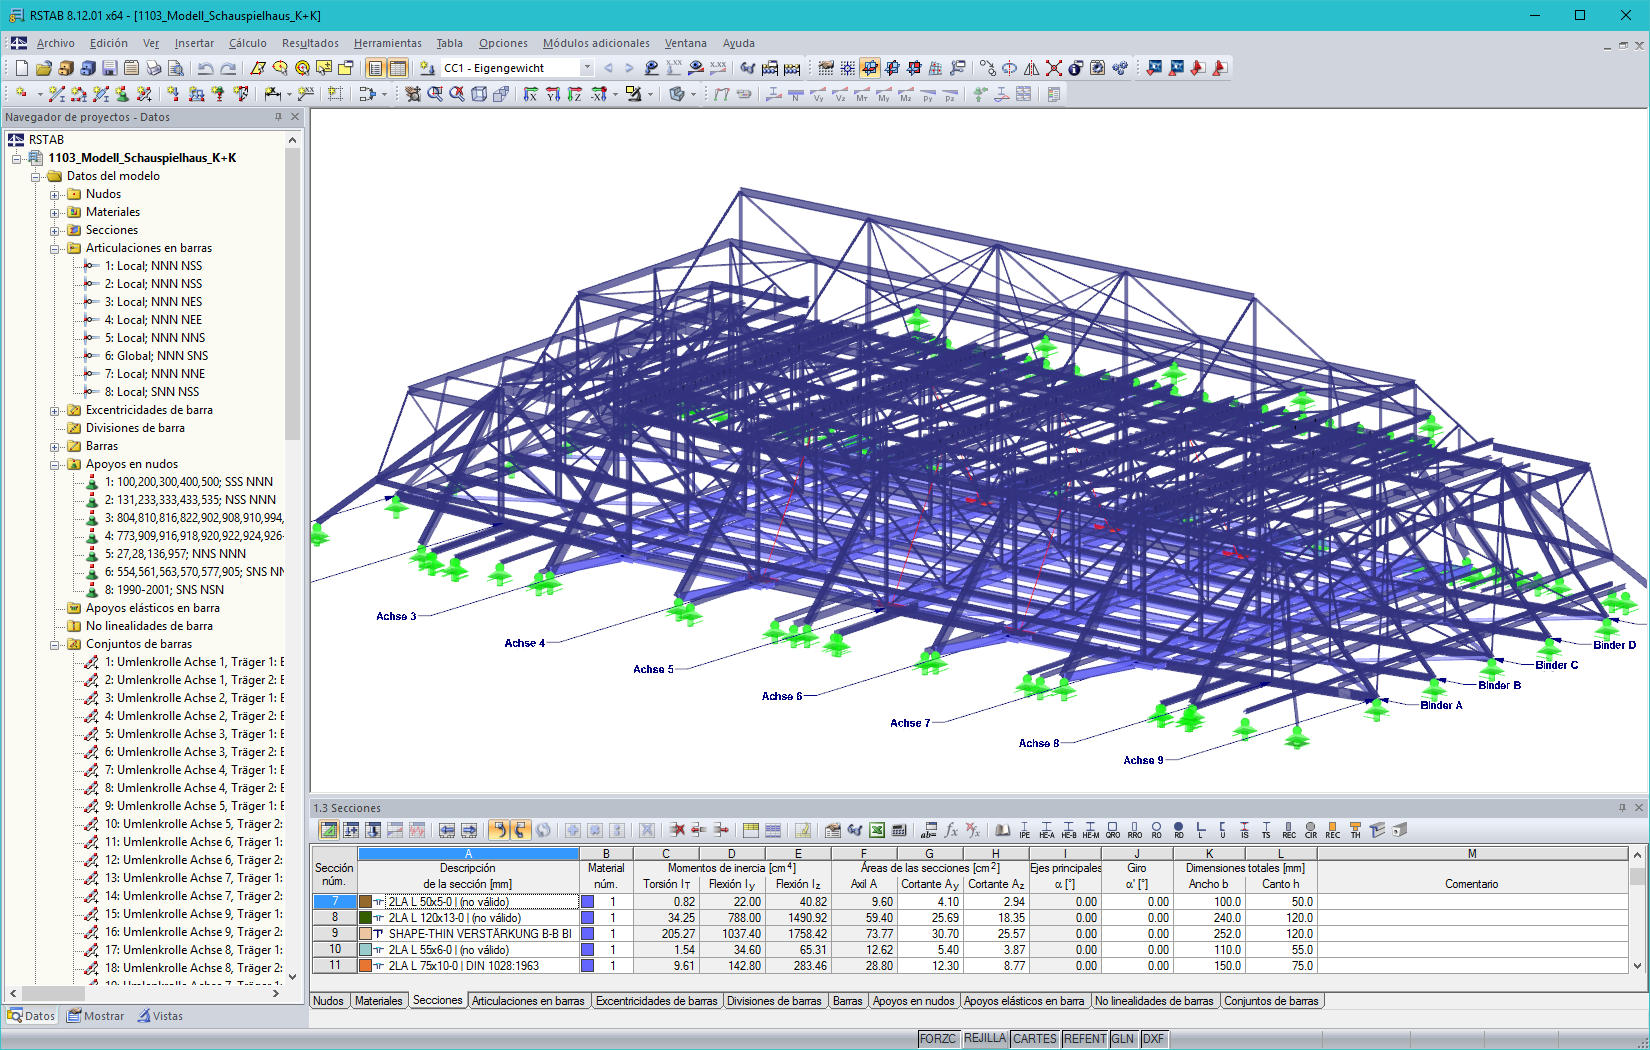 Modelo 3D de la estructura del techo del escenario en RSTAB (© KREBS + KIEFER)